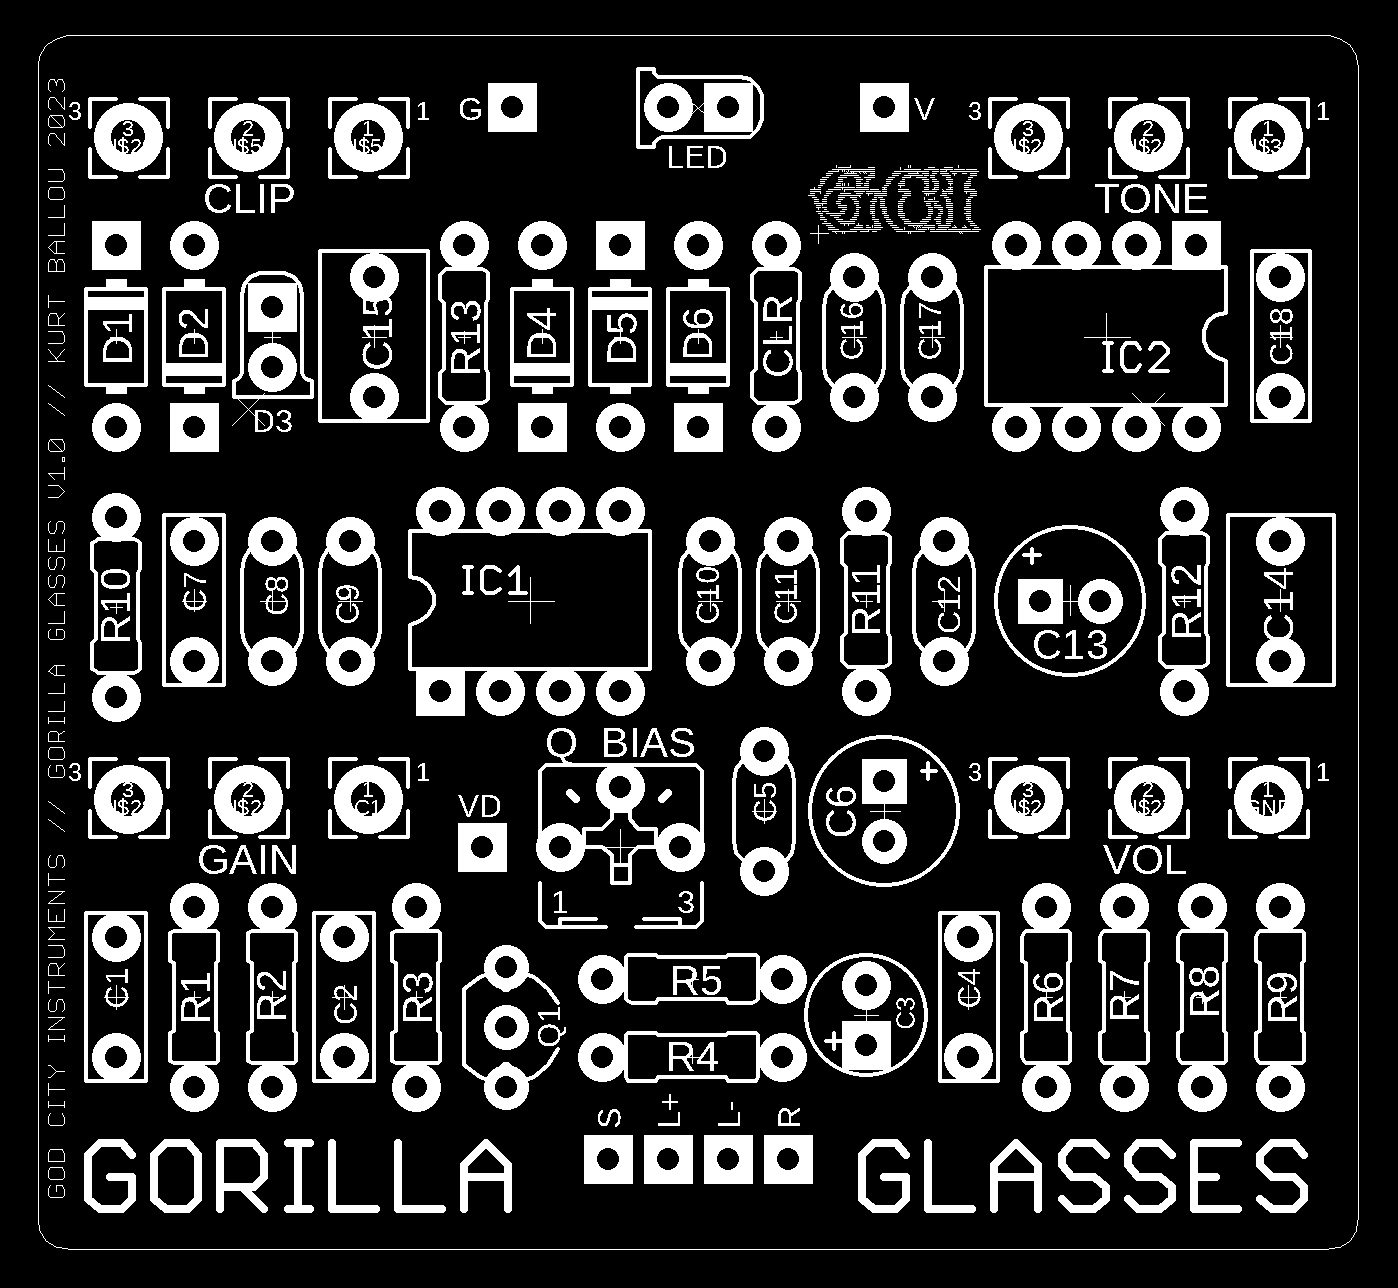 GORILLA GLASSES